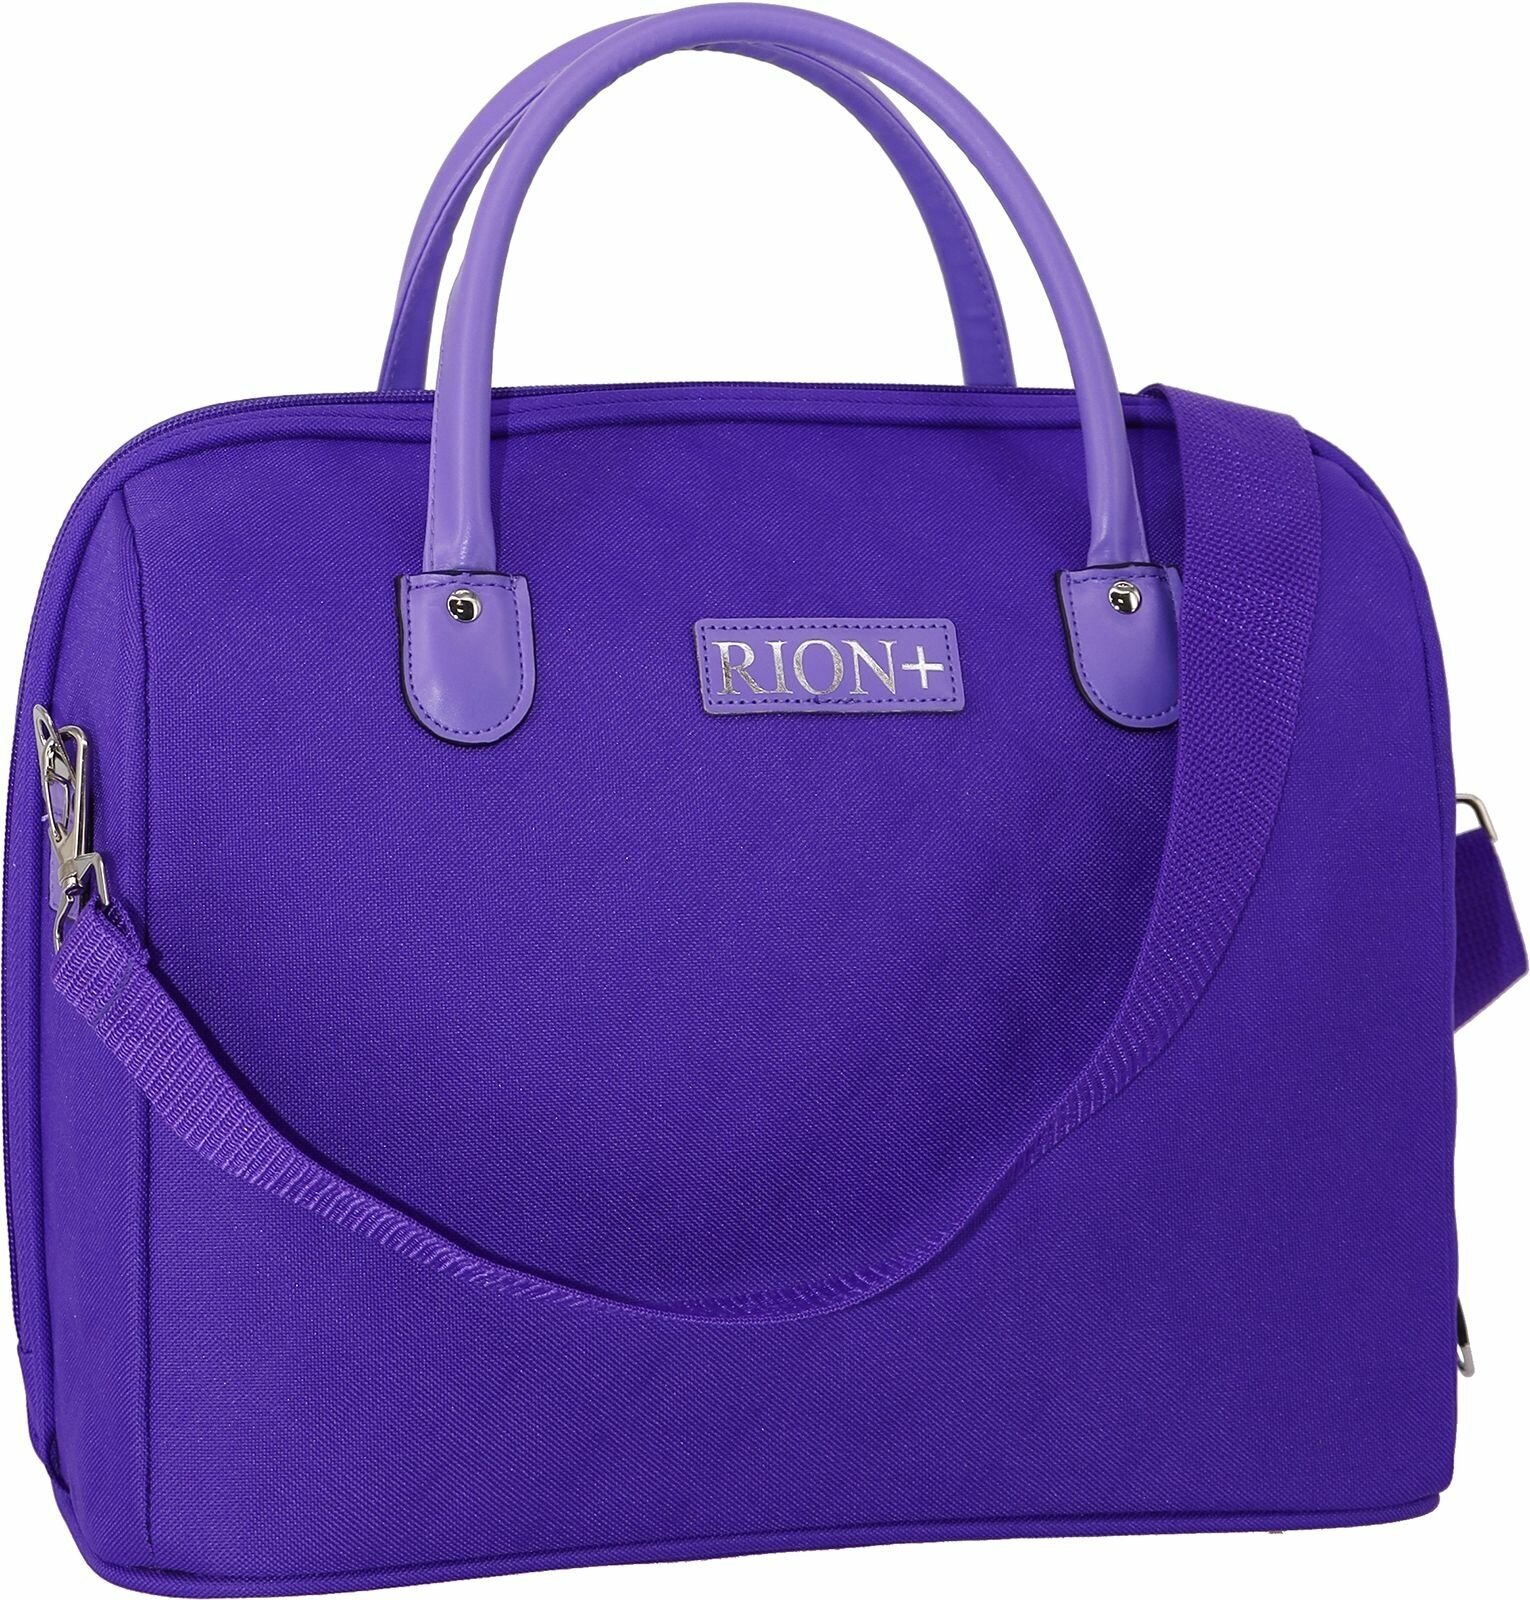 Женская дорожная сумка с ремнем на ручку чемодана Рион+ (RION+) / ручная кладь / саквояж для города, R236, Тканевая, 20 литров, сиреневый - фотография № 1